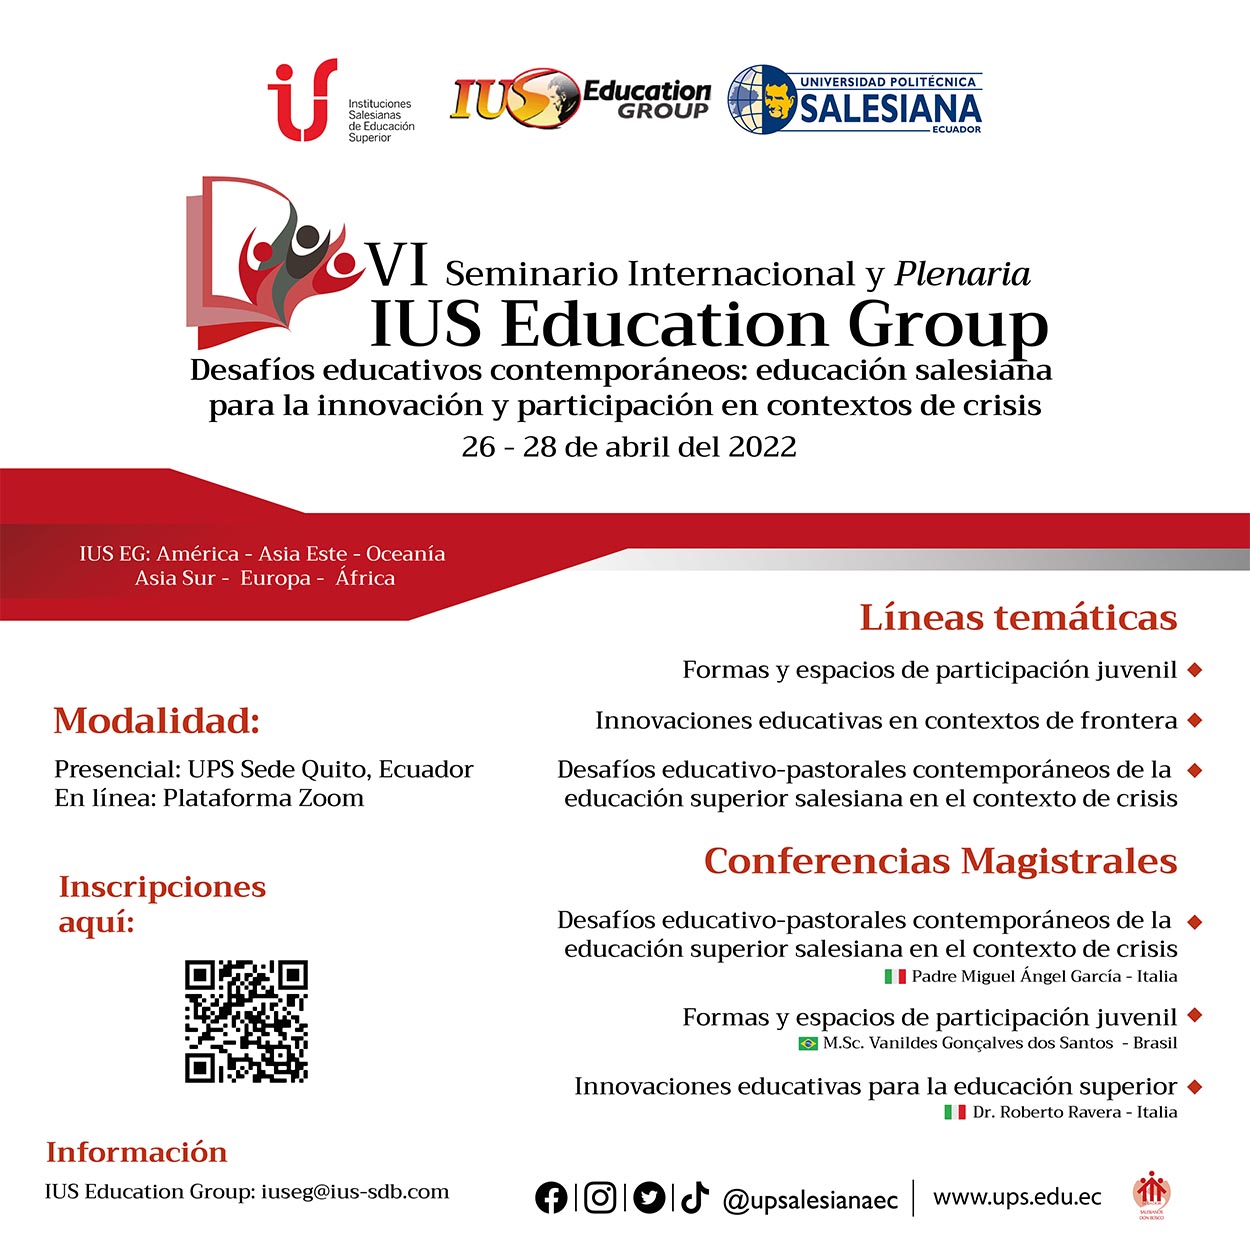 Afiche promocional del VI Seminario Internacional y Plenaria IUS Education Group